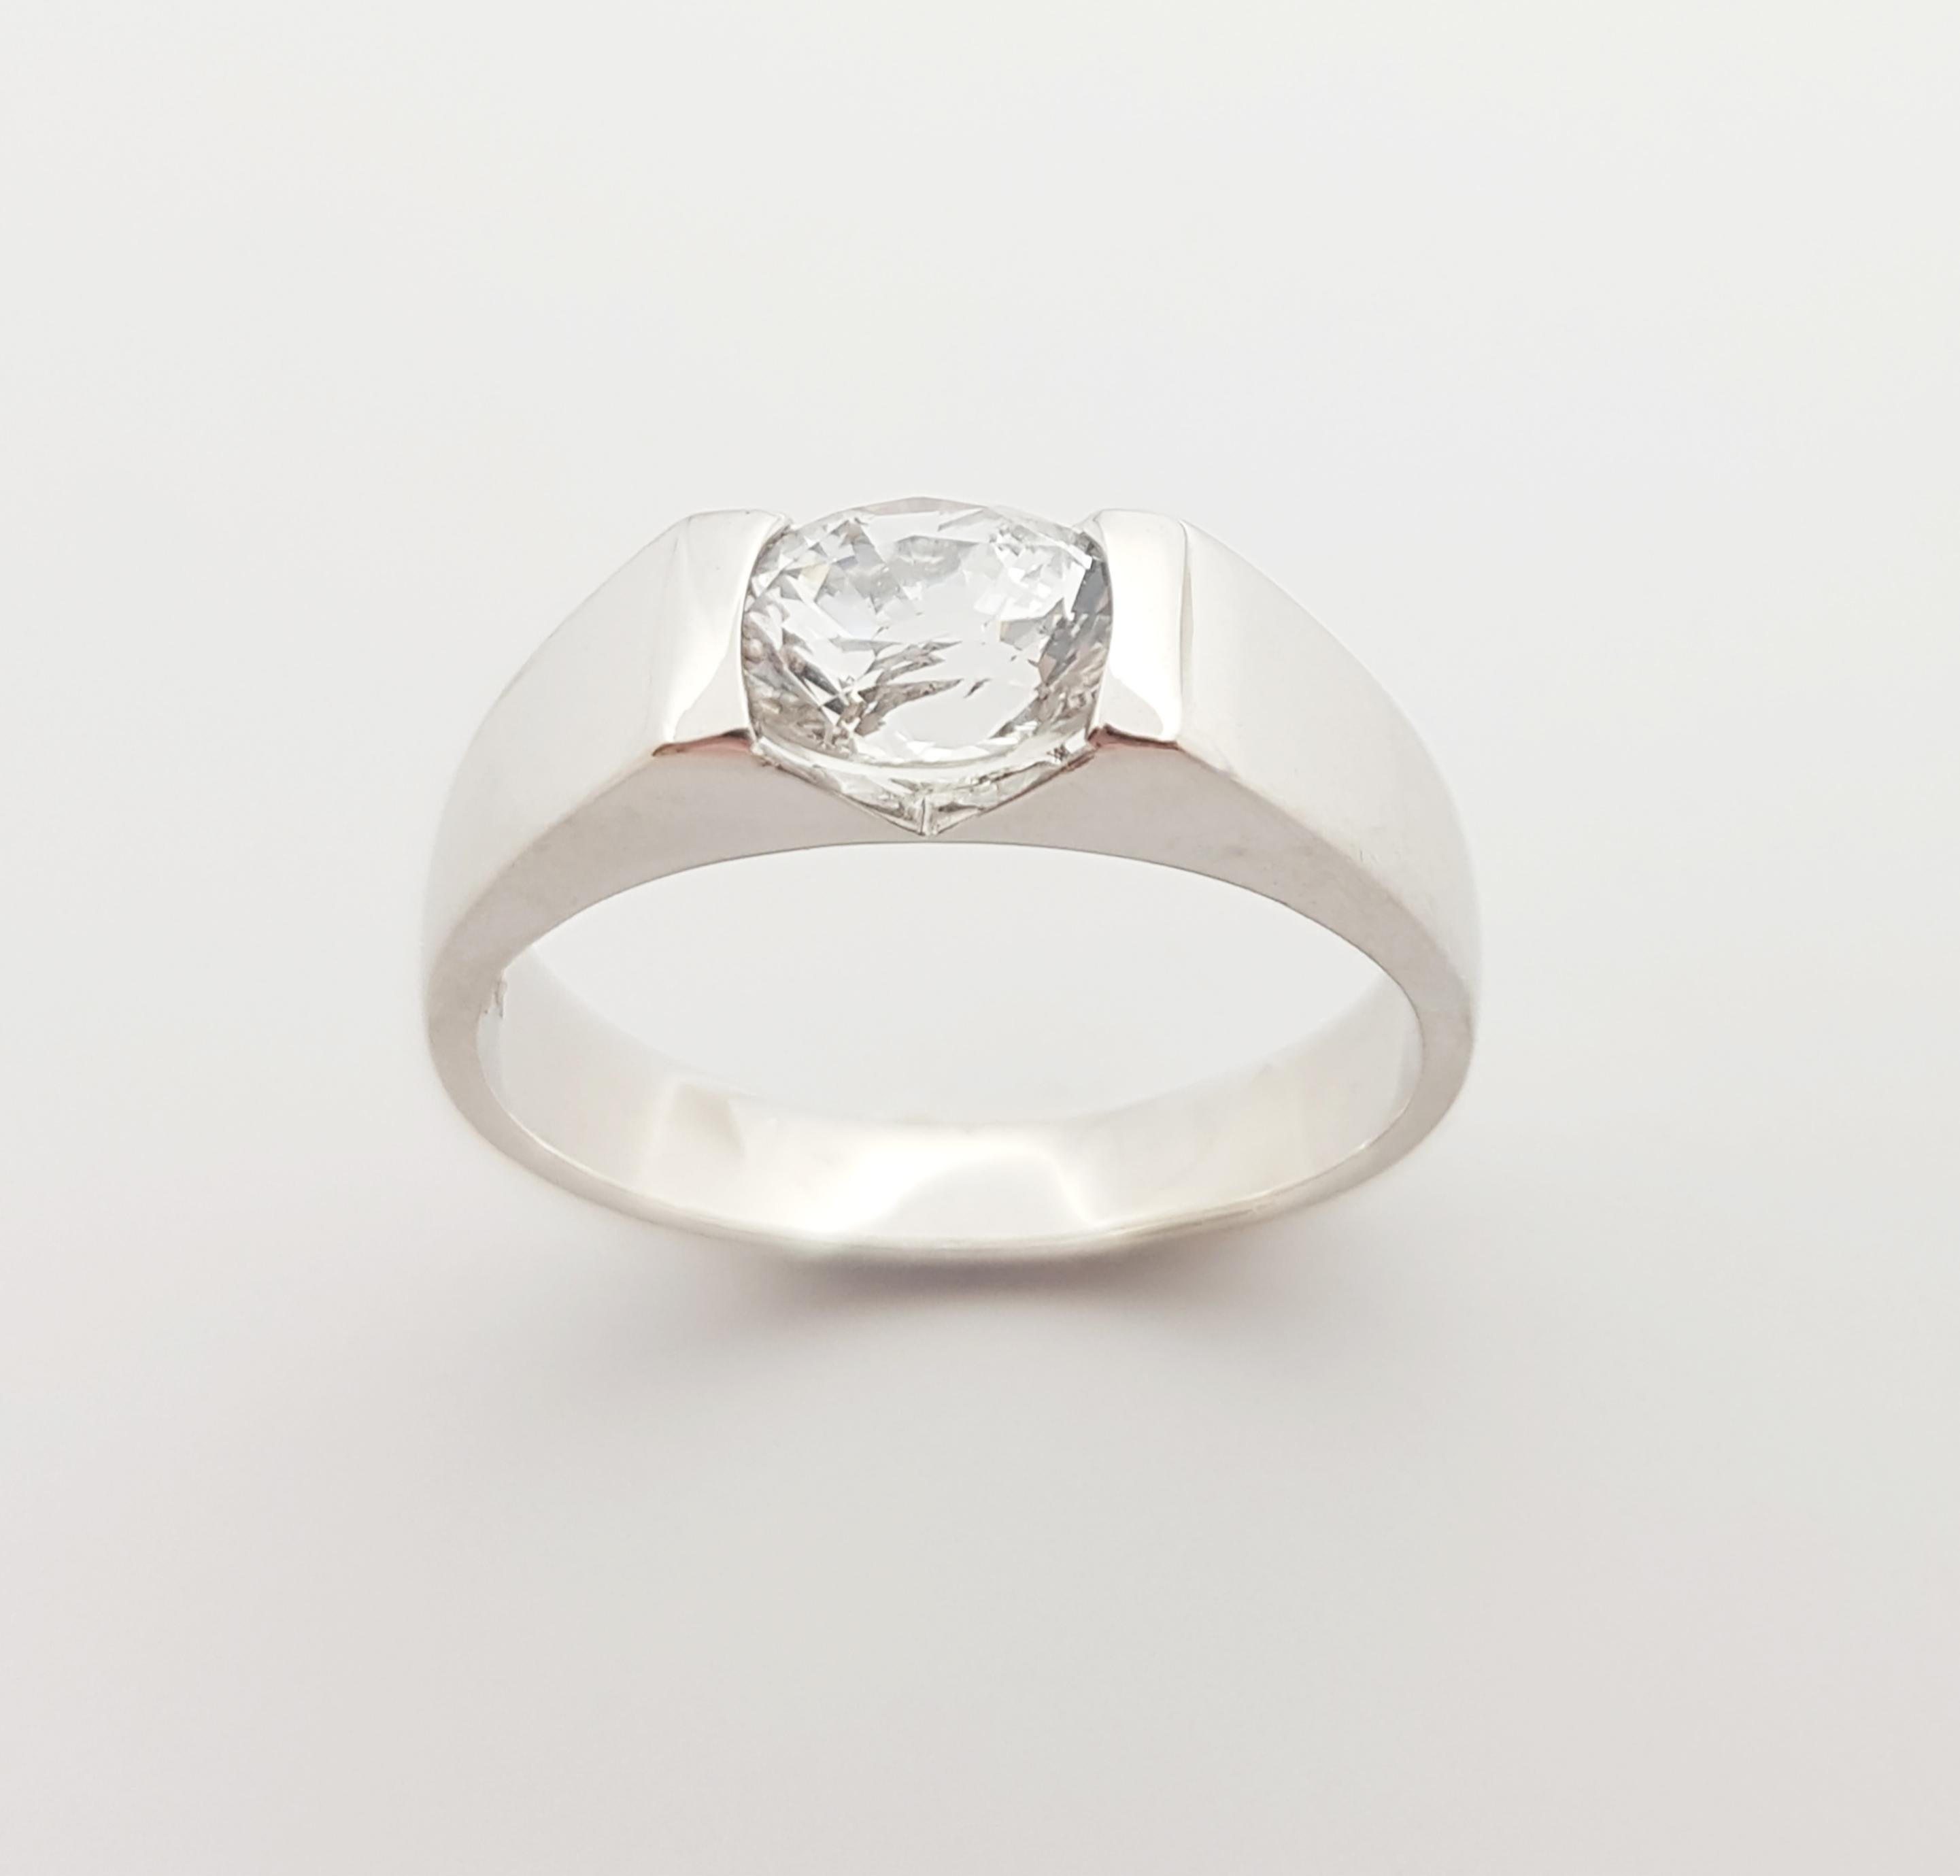 1 carat diamond size in cm